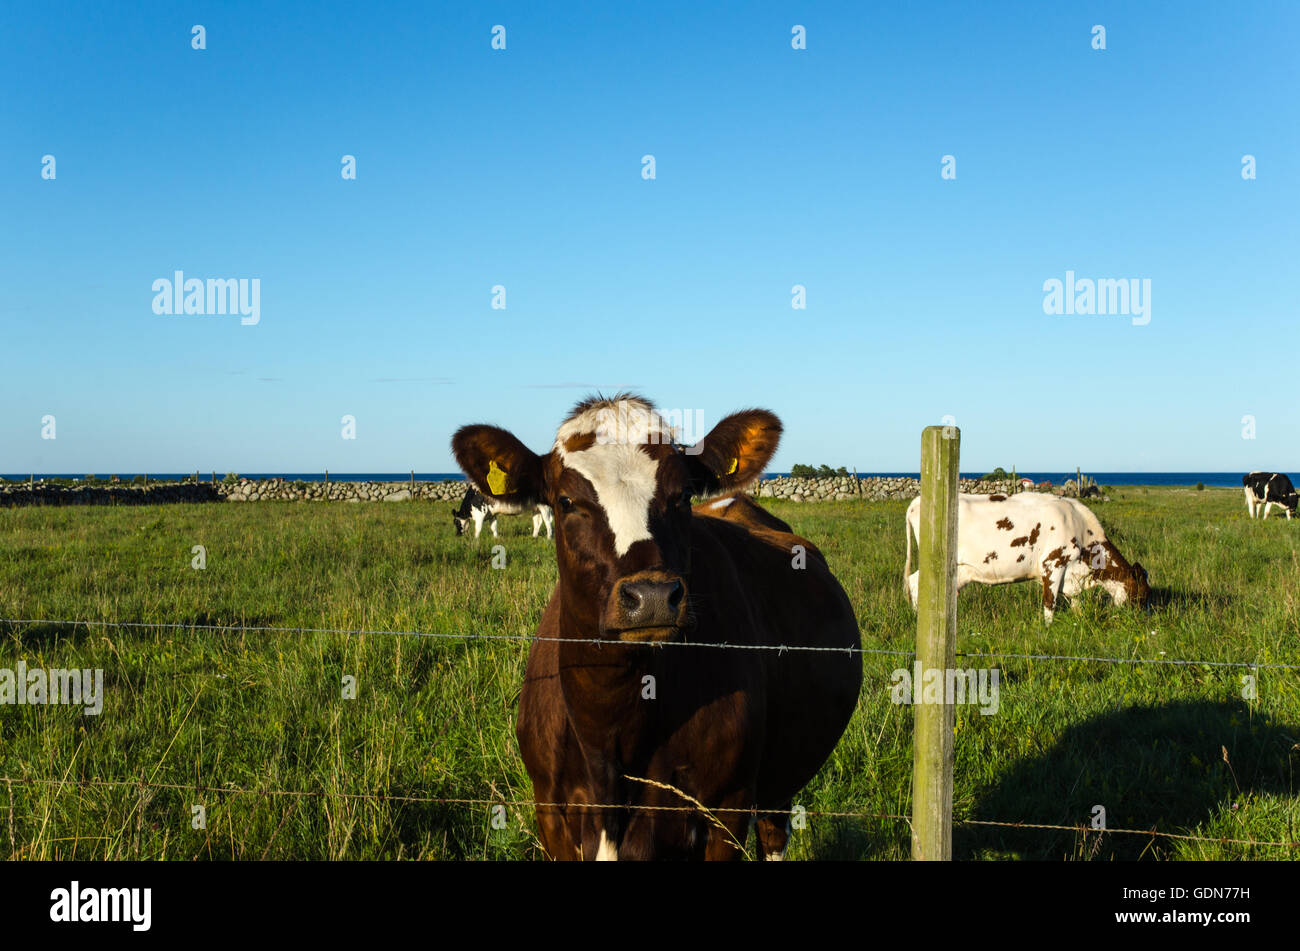 Curioso busca vaca detrás de una valla de alambre de púa en un verde pastos Foto de stock